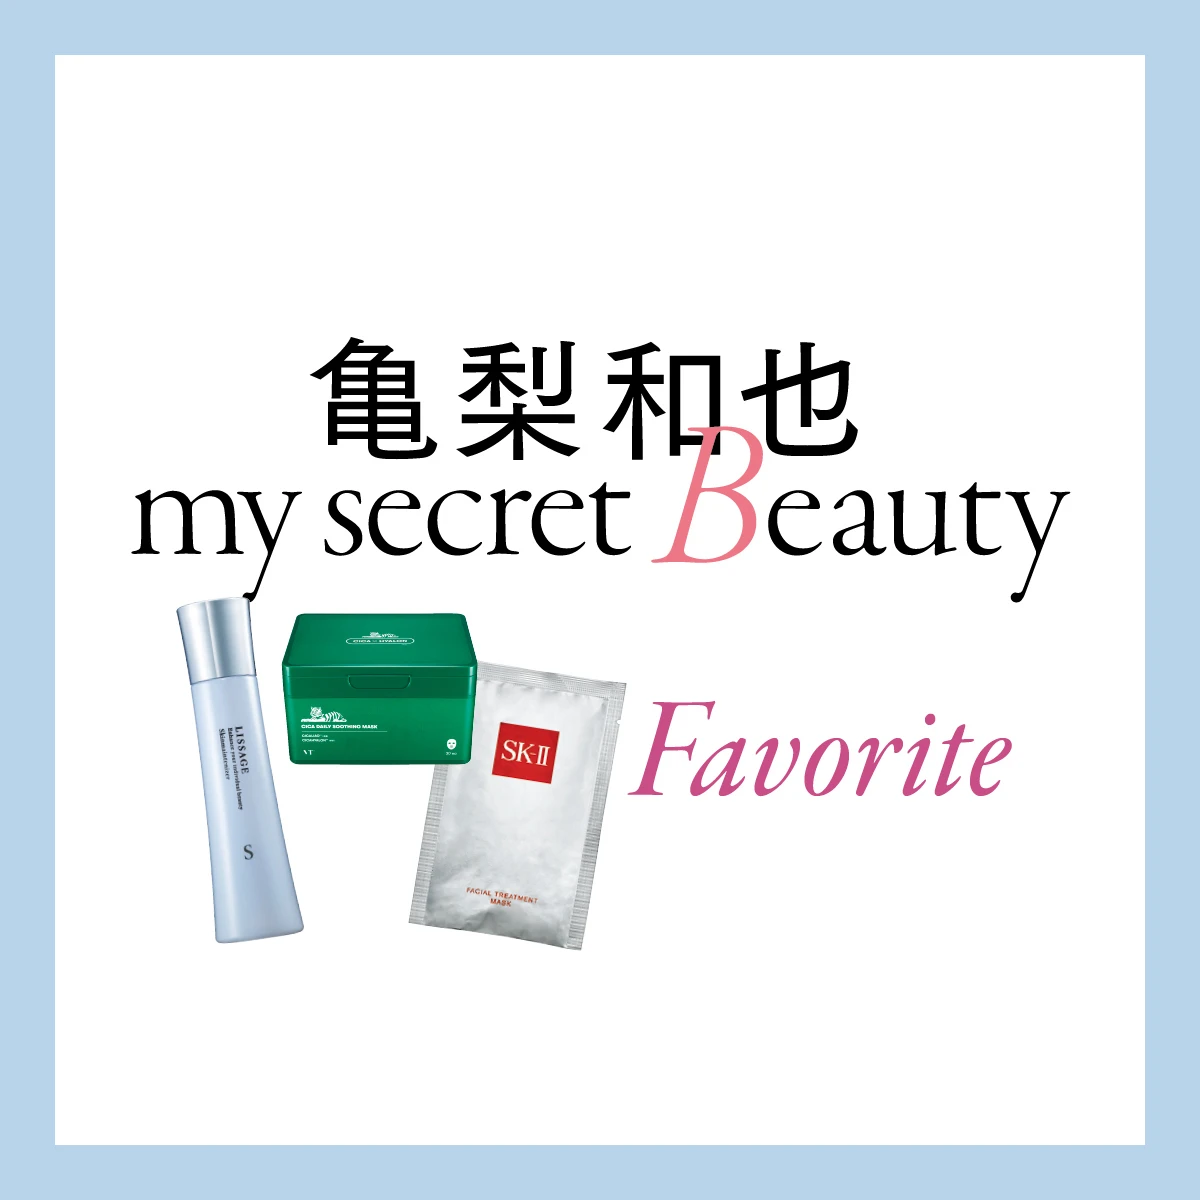 亀梨和也が美容について初めて語る。「香水の香りはもはや自分そのもの。だから秘密にさせてよ」